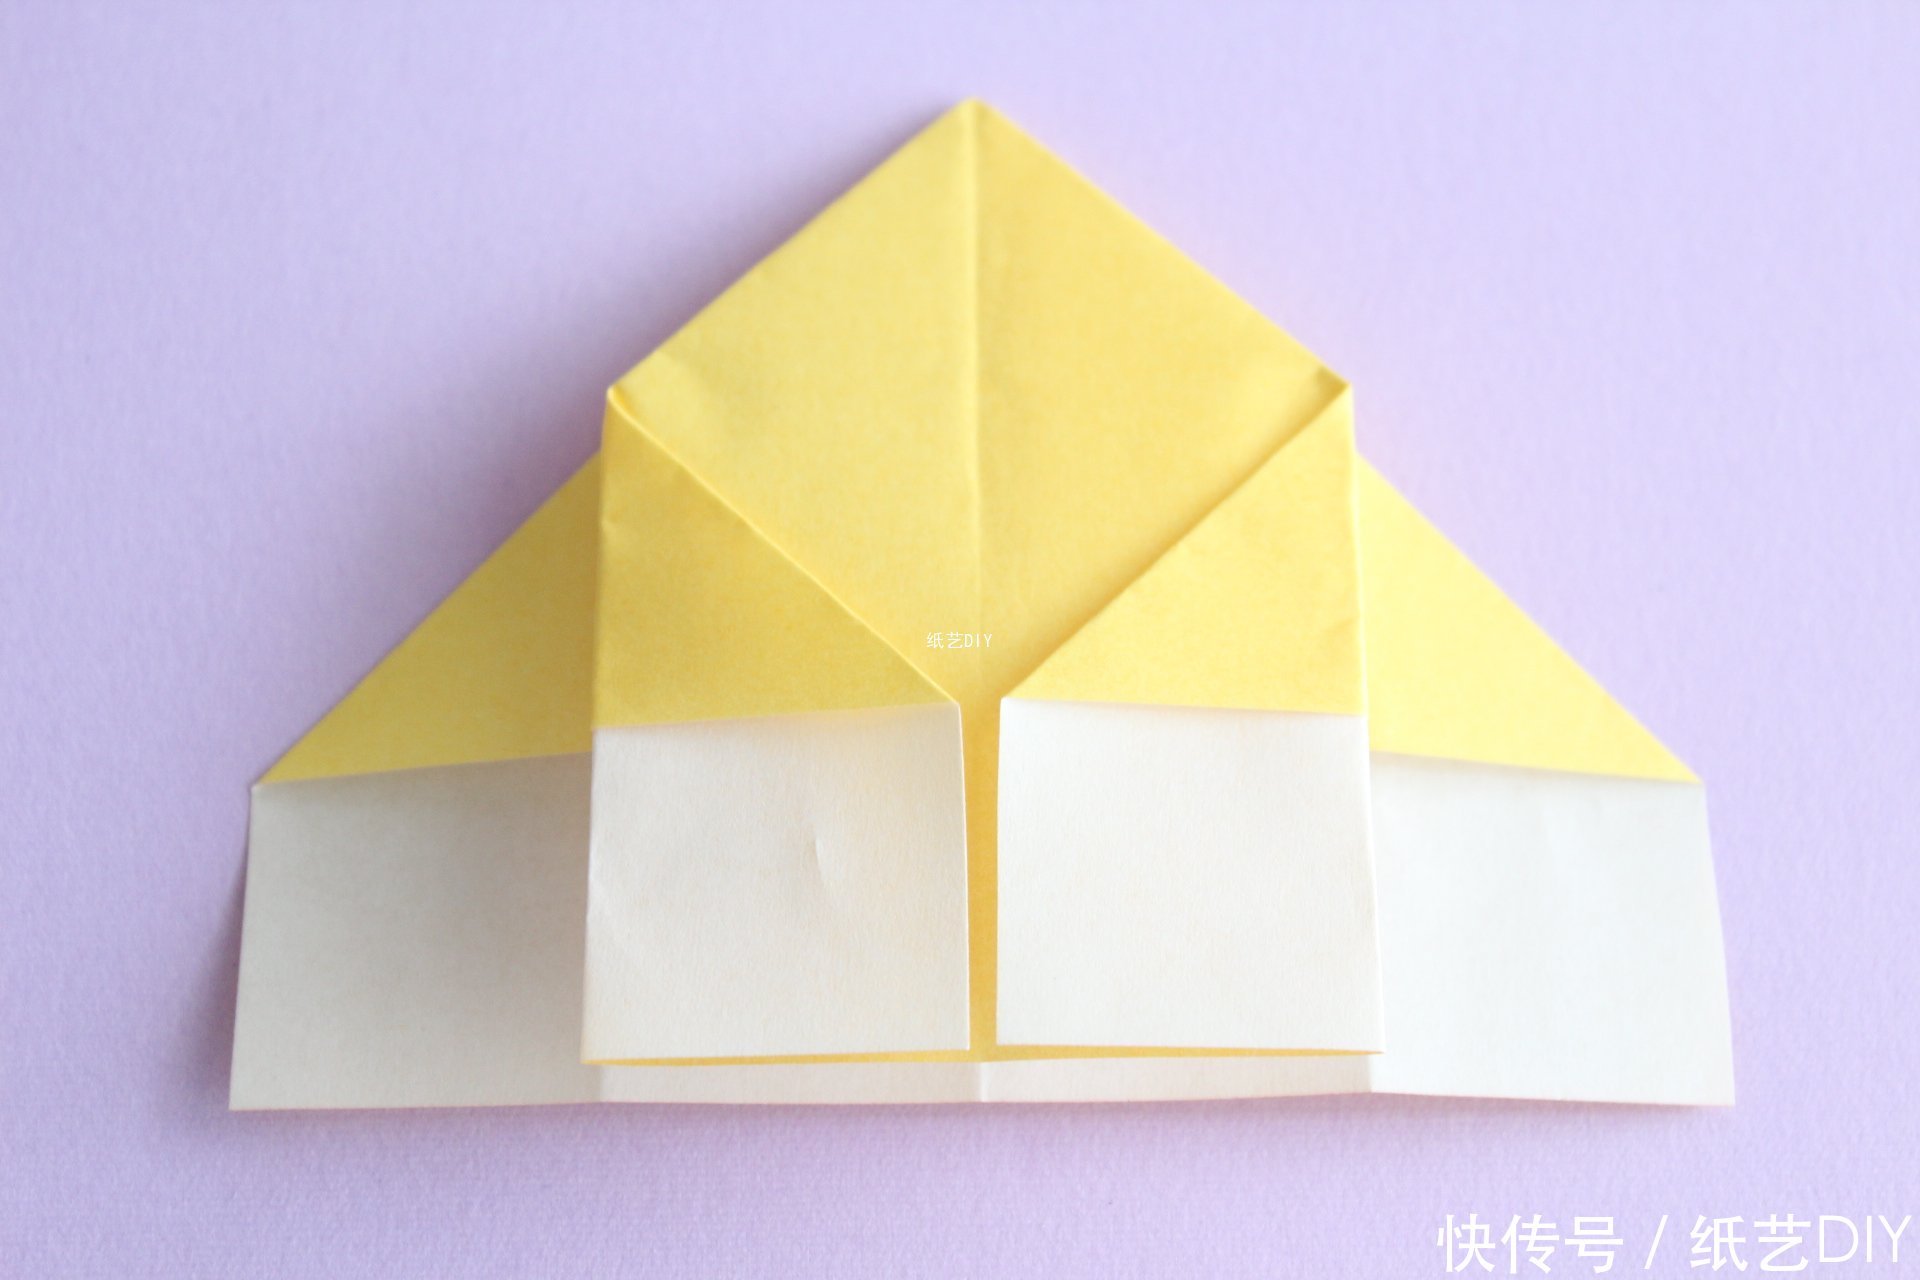 实用简单小型垃圾盒子折纸教程-生活小能手